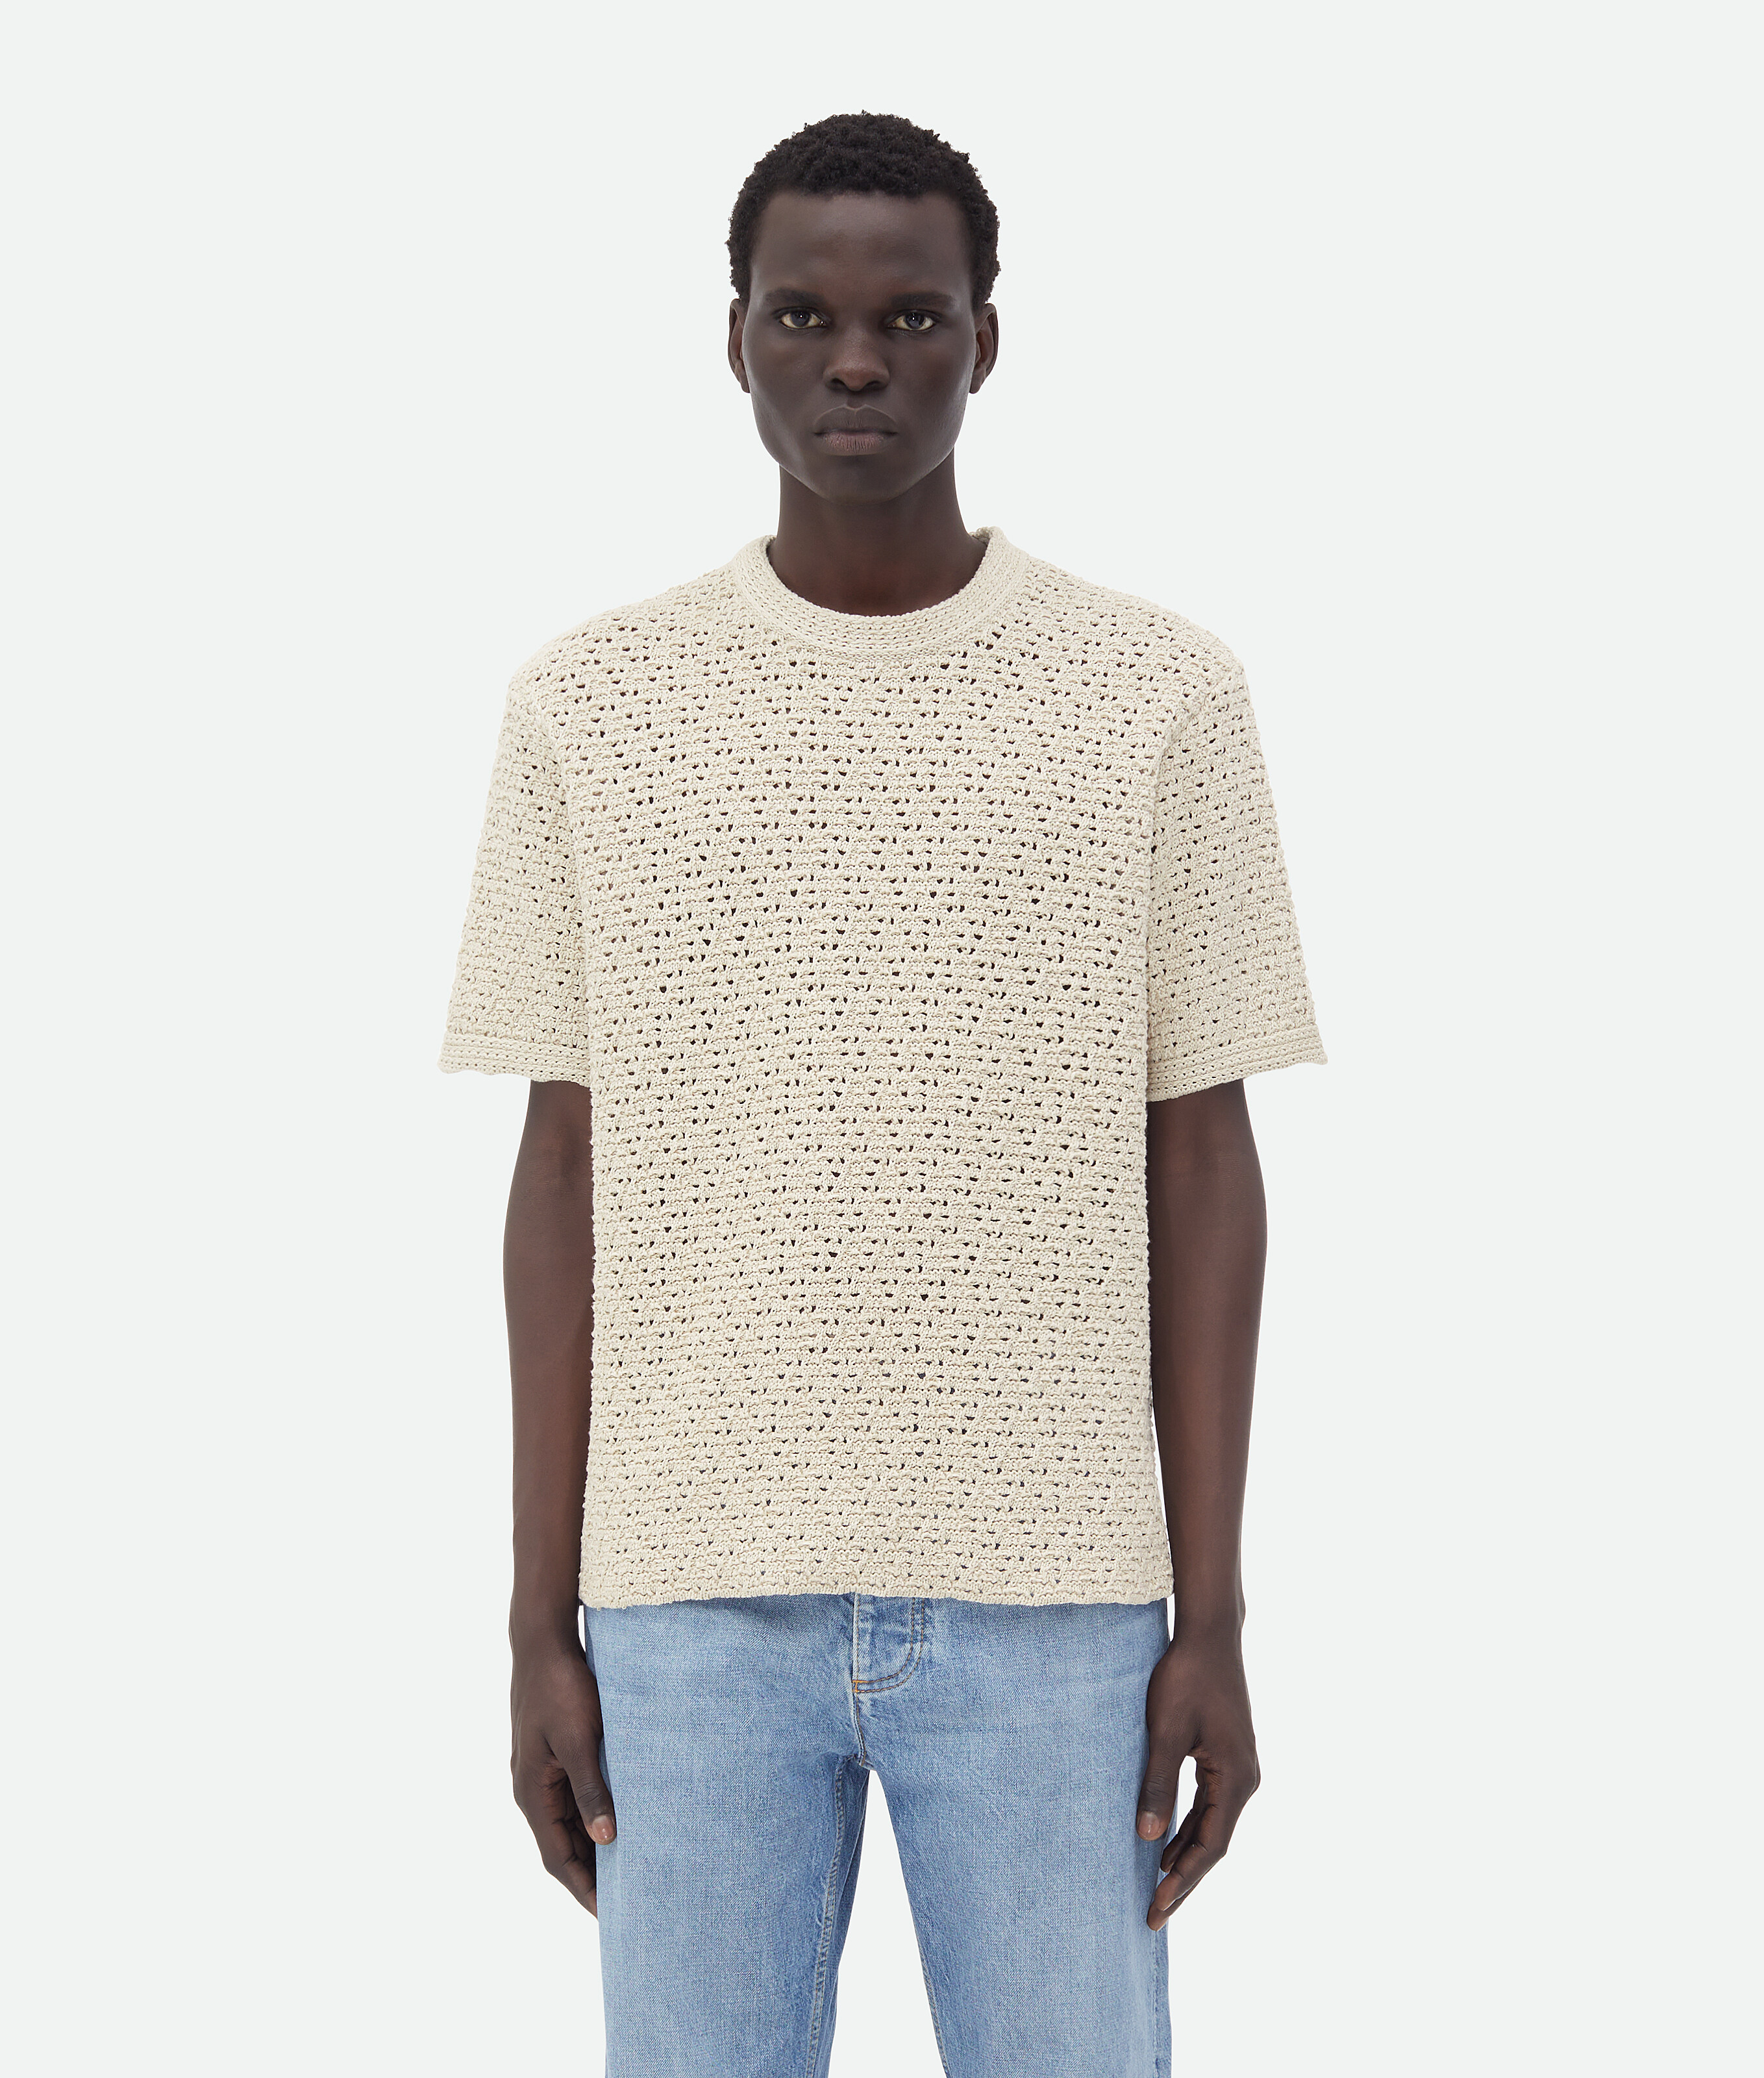 Bottega Veneta Cotton Crochet T-shirt In Bone/cloud